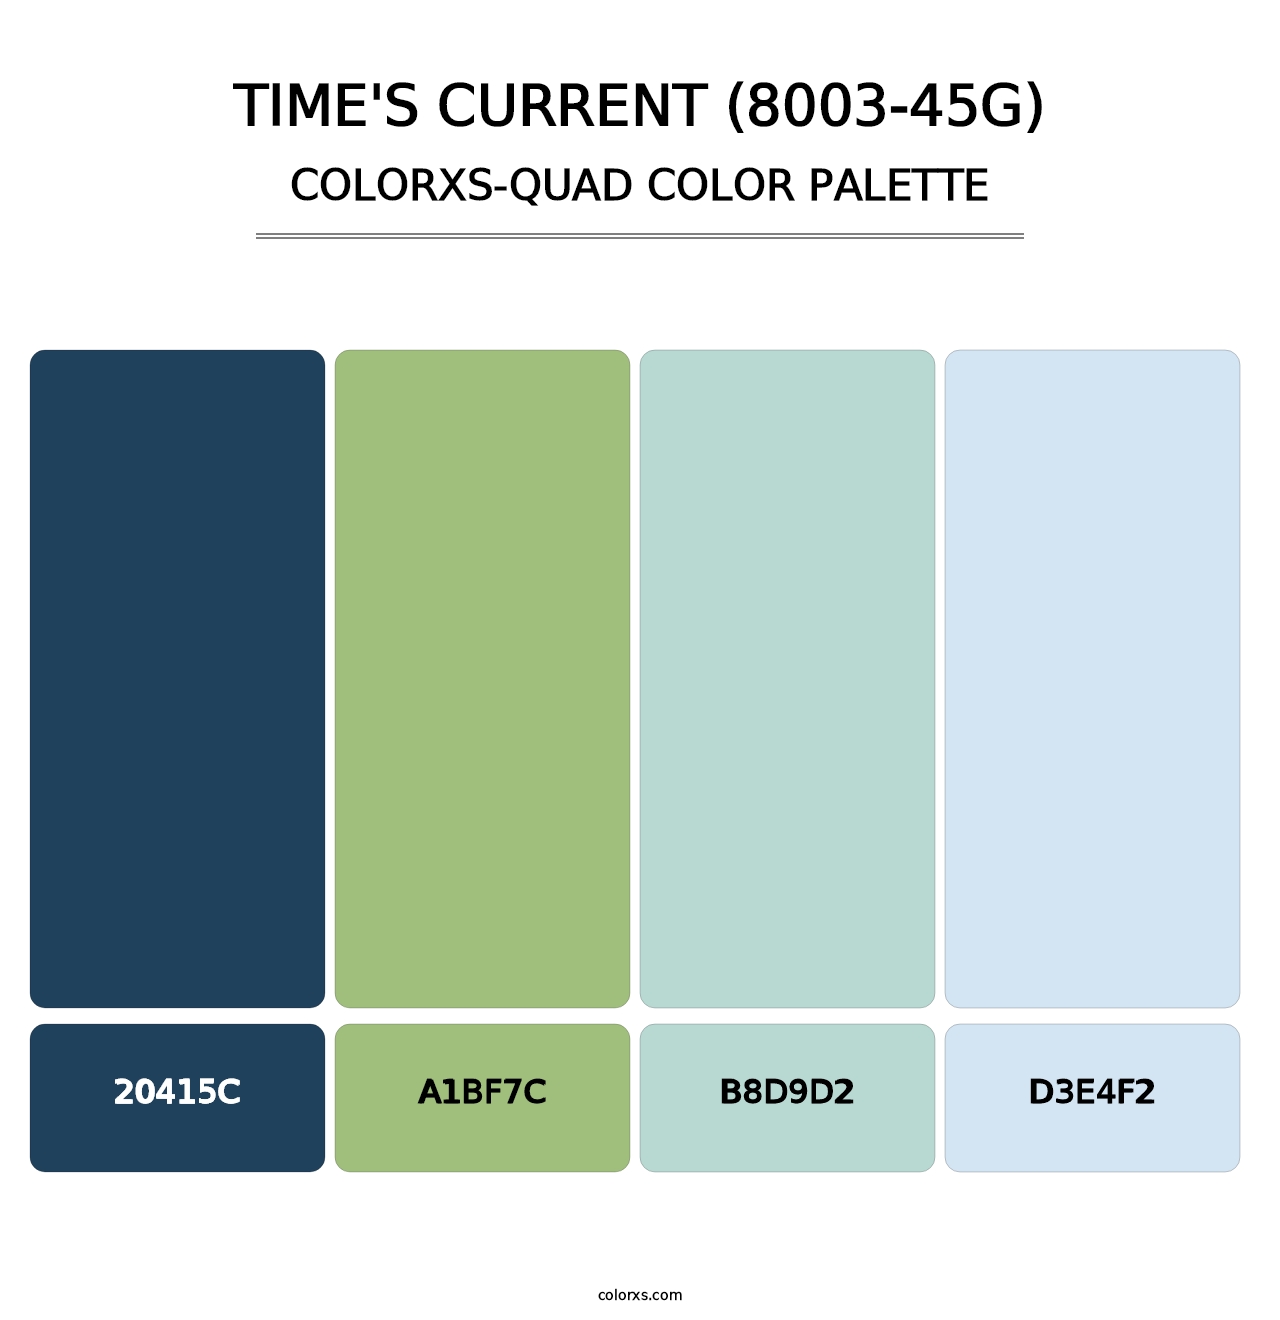 Time's Current (8003-45G) - Colorxs Quad Palette